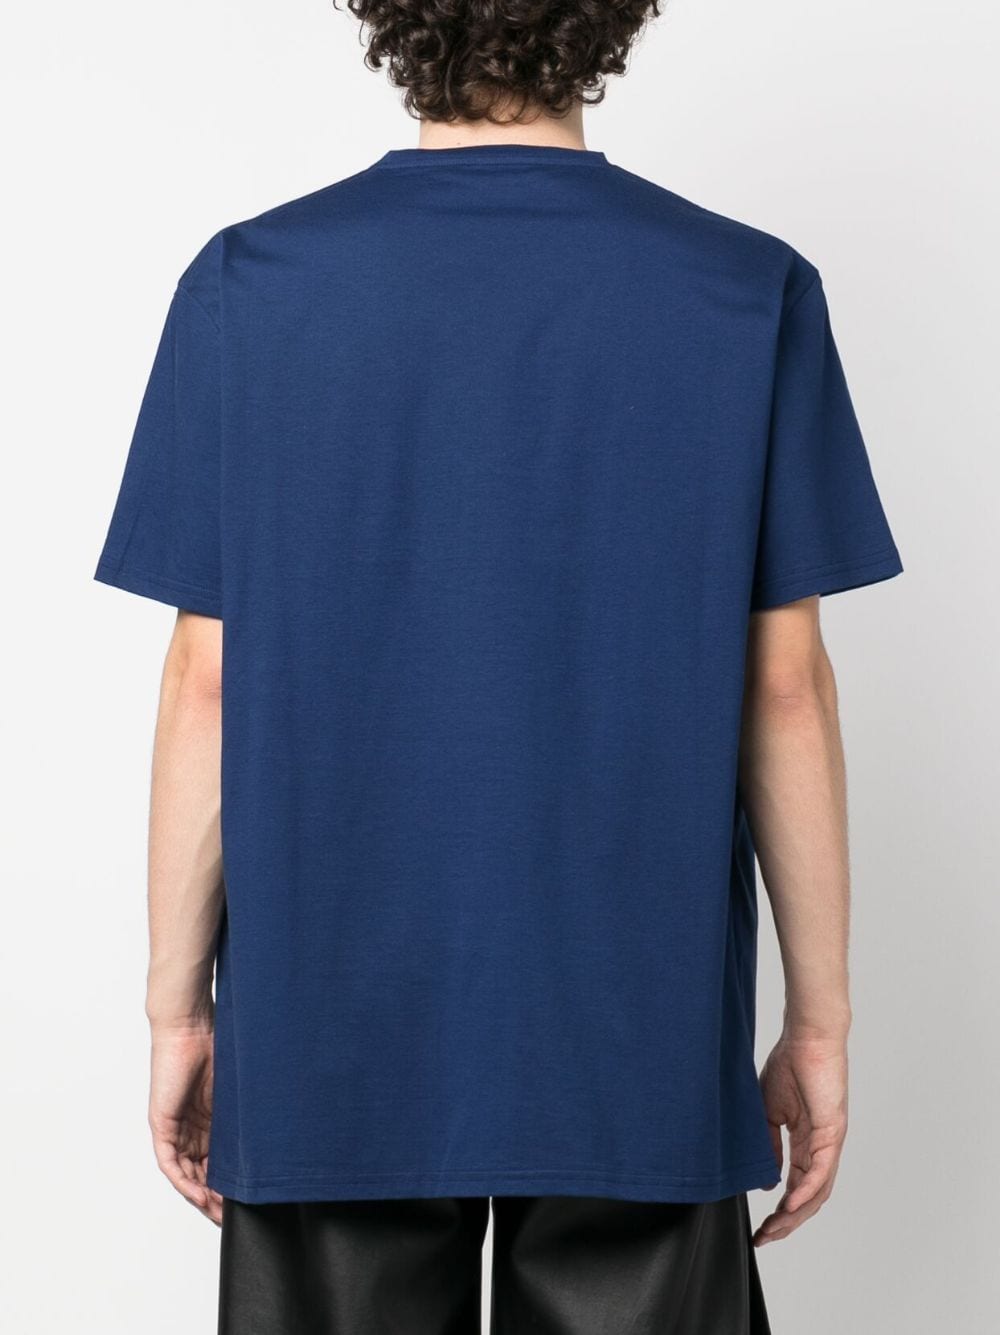 Alexander Mc Queen - T-shirt bleu en coton à logo imprimé - Lothaire